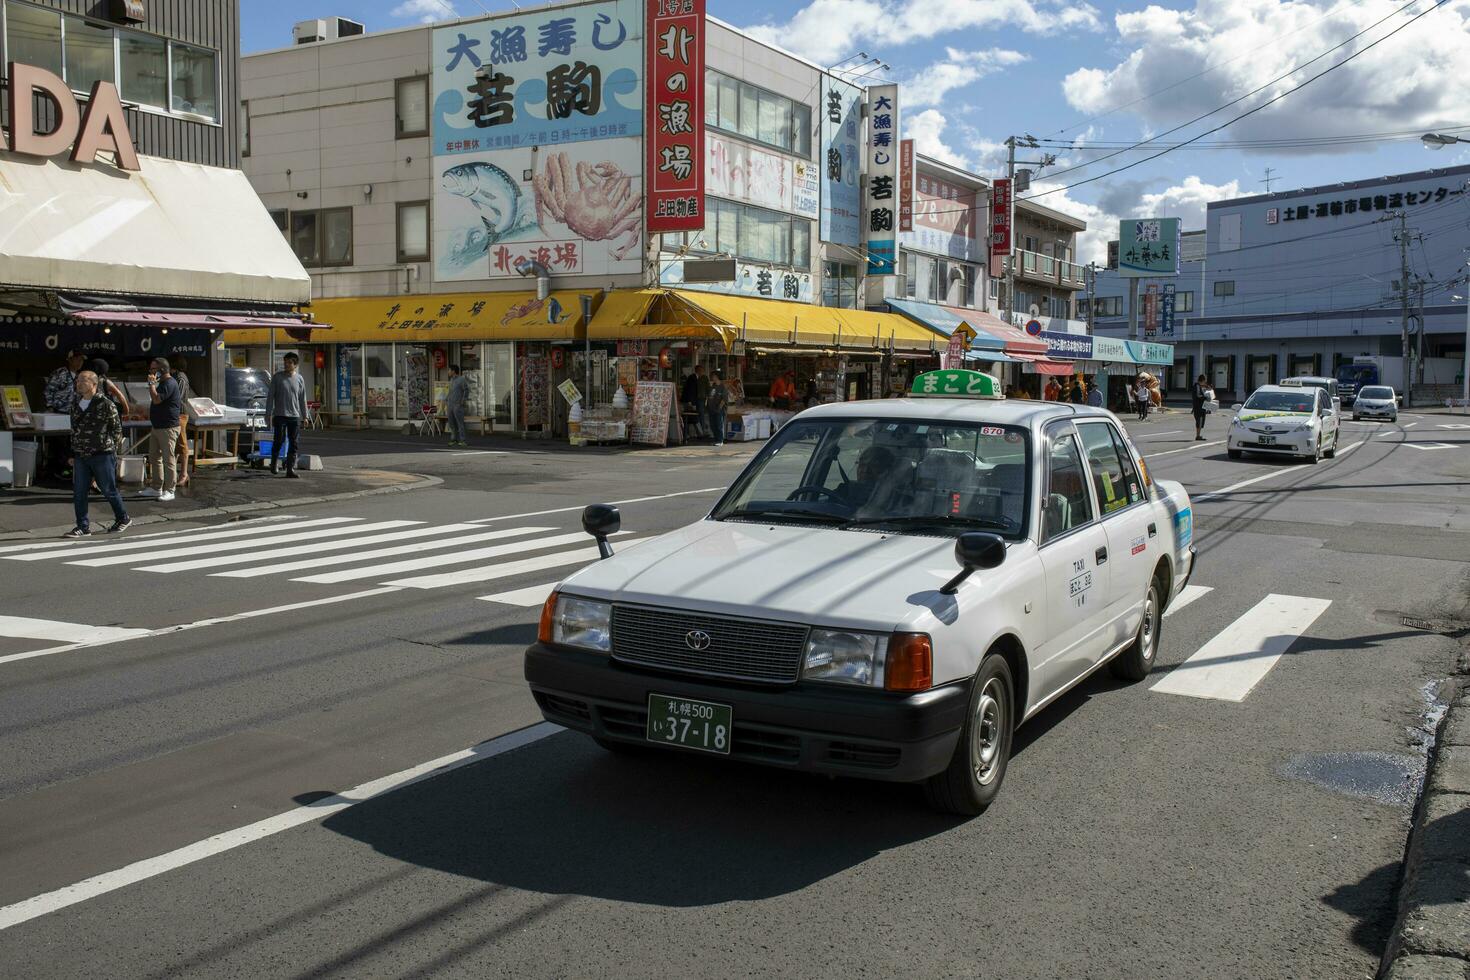 hokkaido Giappone - ottobre 8,2018 vecchio toyota Taxi guida su soen-hassamu dori strada jogai frutti di mare mercato hokkaido Giappone foto